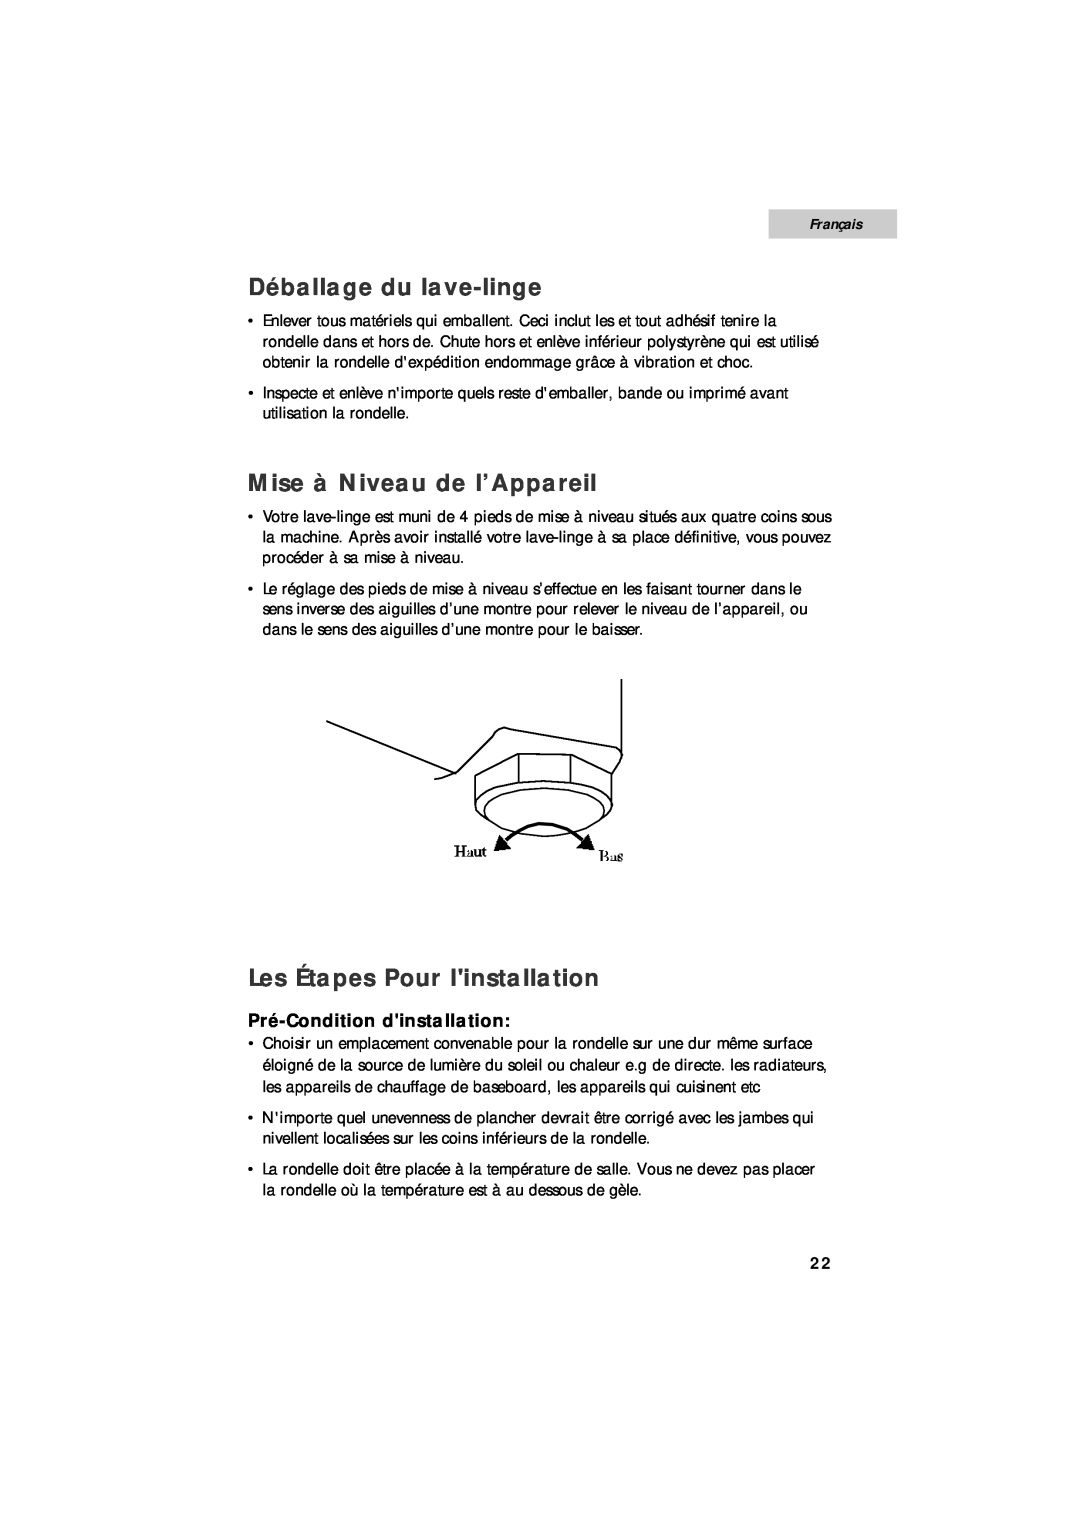 Summit SPW1200P user manual Déballage du lave-linge, Mise à Niveau de l’Appareil, Les Étapes Pour linstallation, Français 